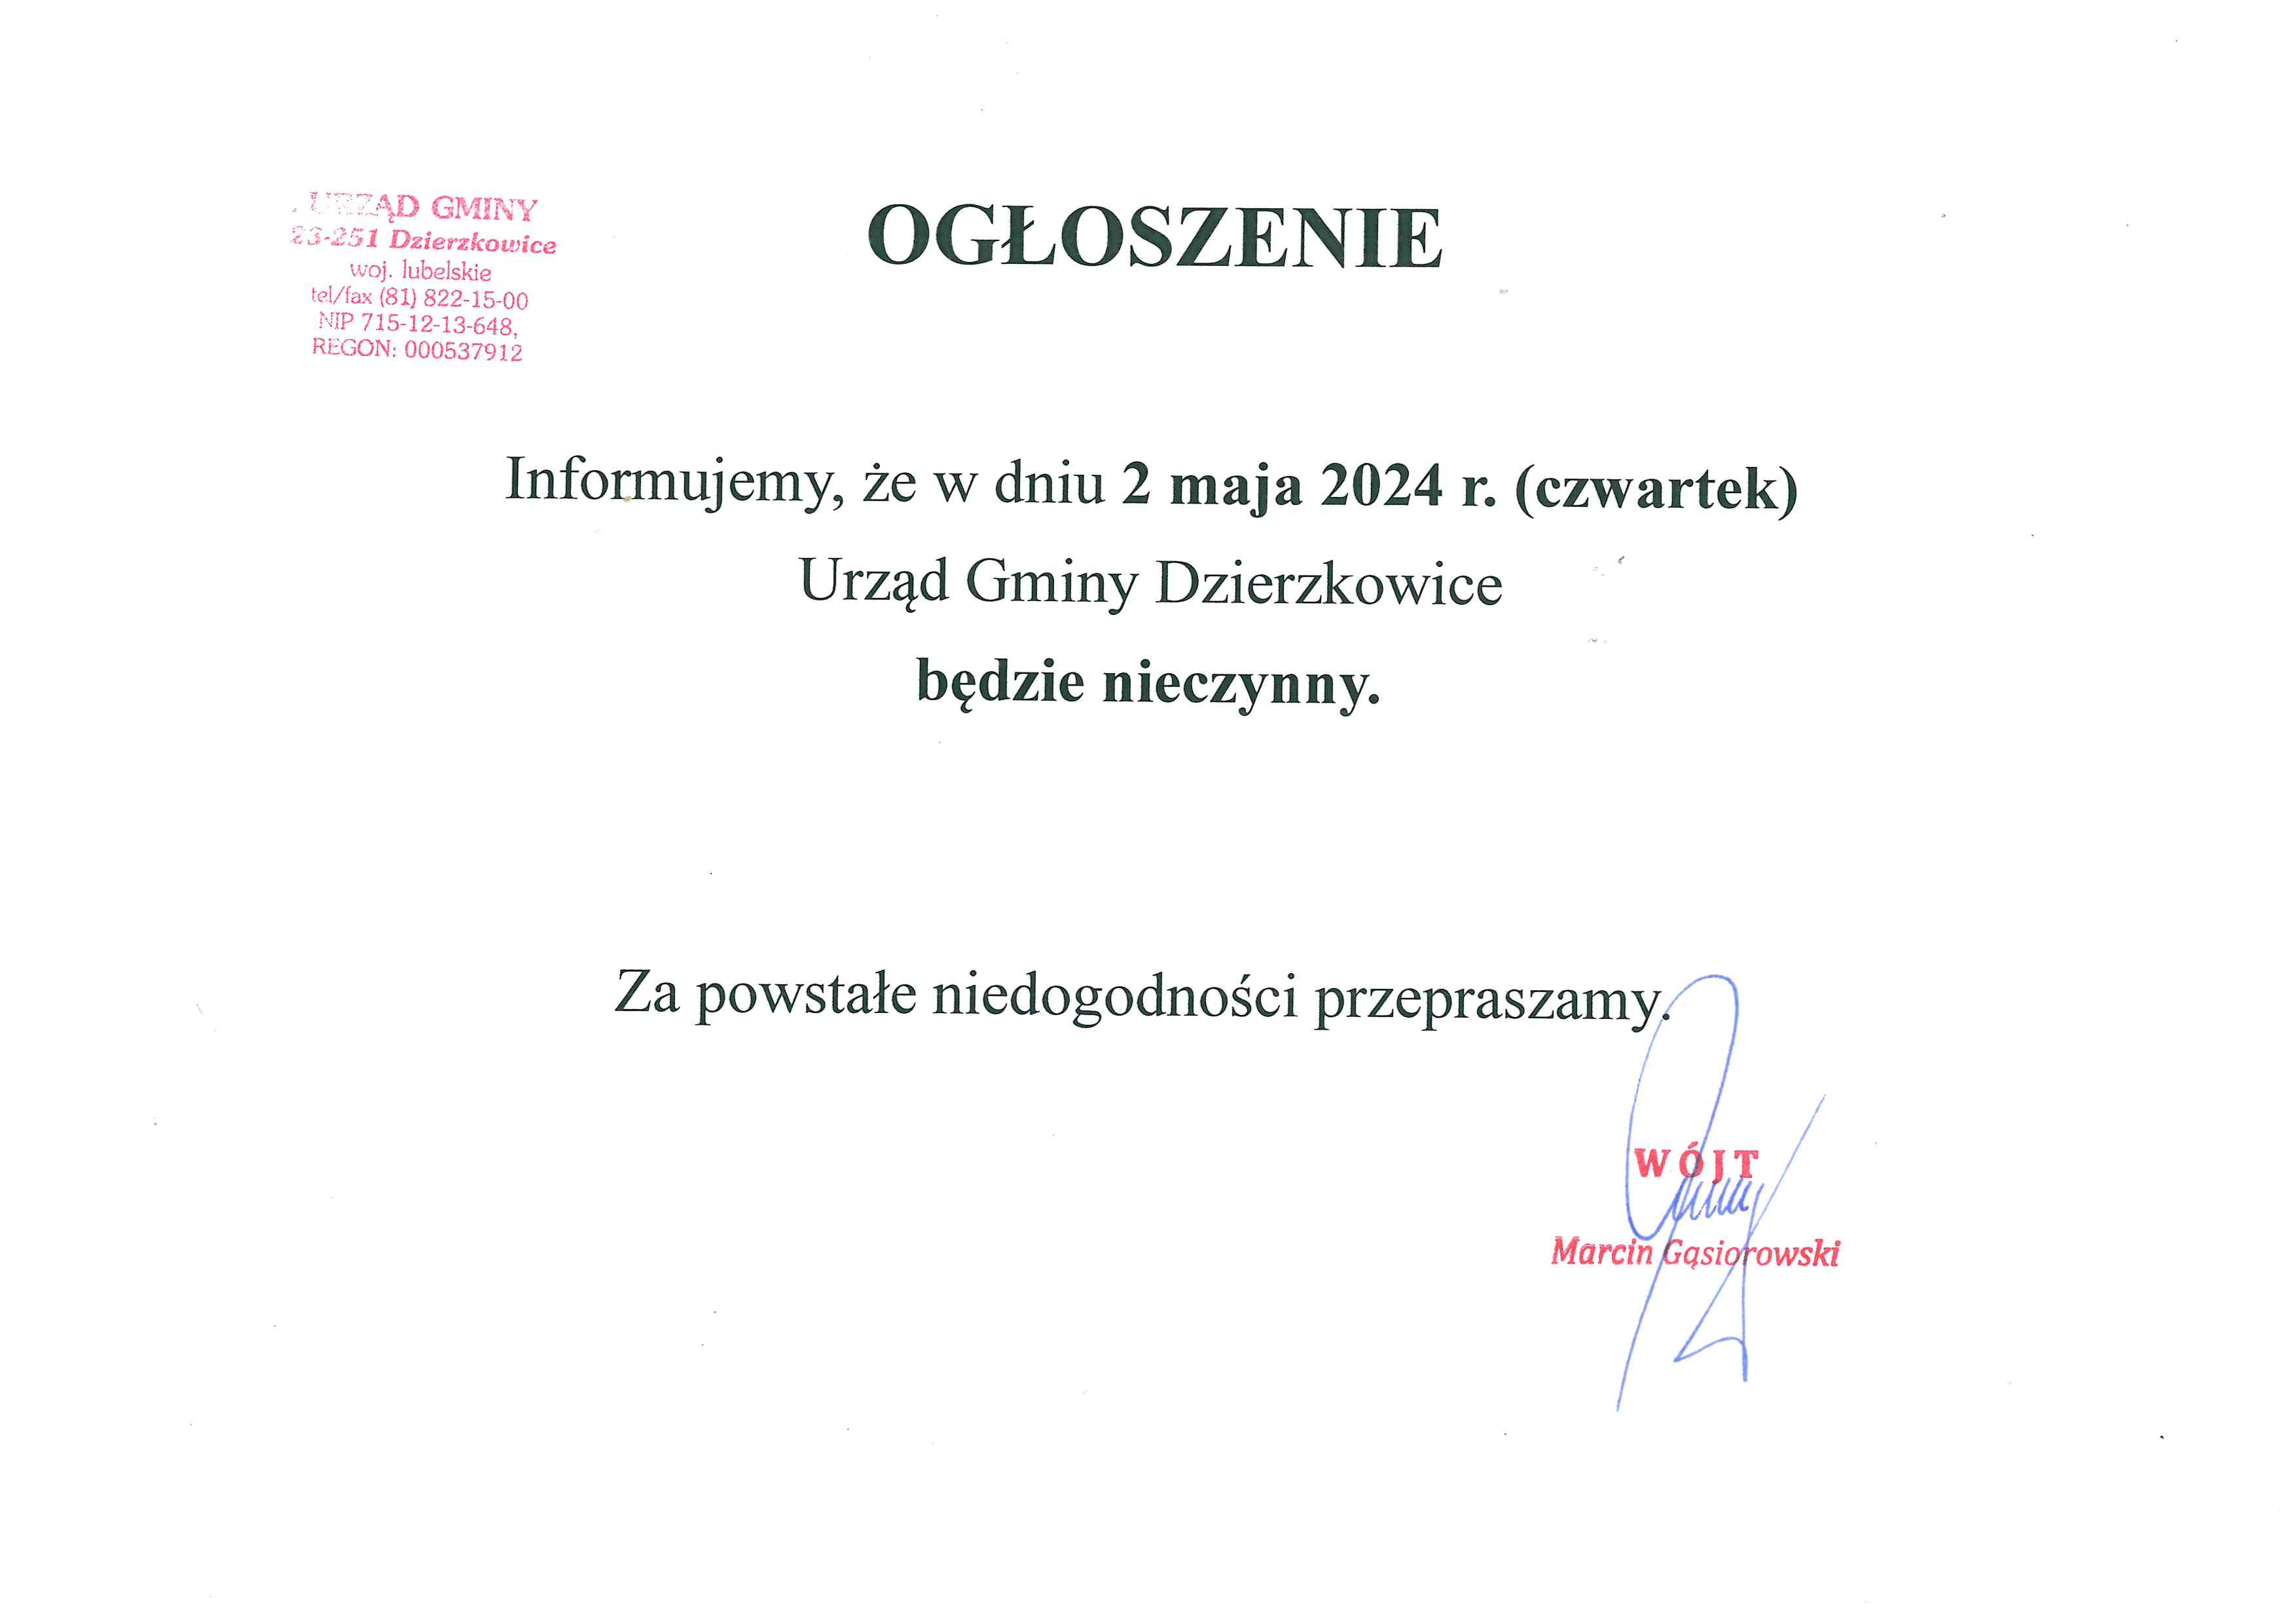 W dniu 2 maja Urząd Gminy w Dzierzkowicach będzie nieczynny - zdjęcie